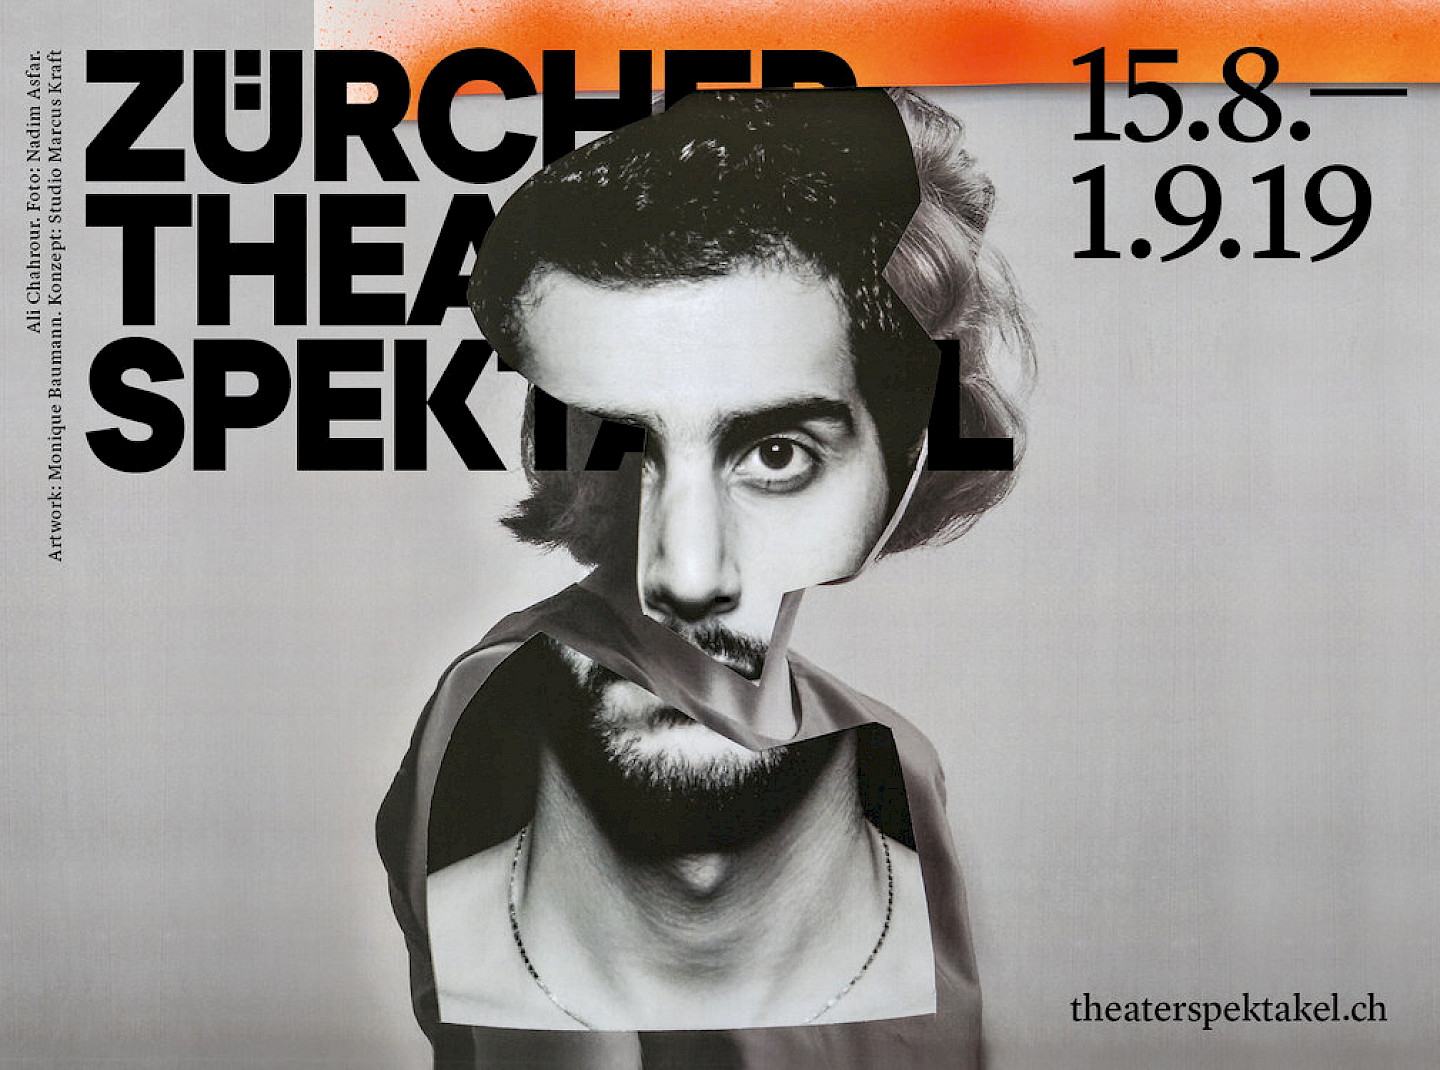 Zürcher Theater Spektakel 2019